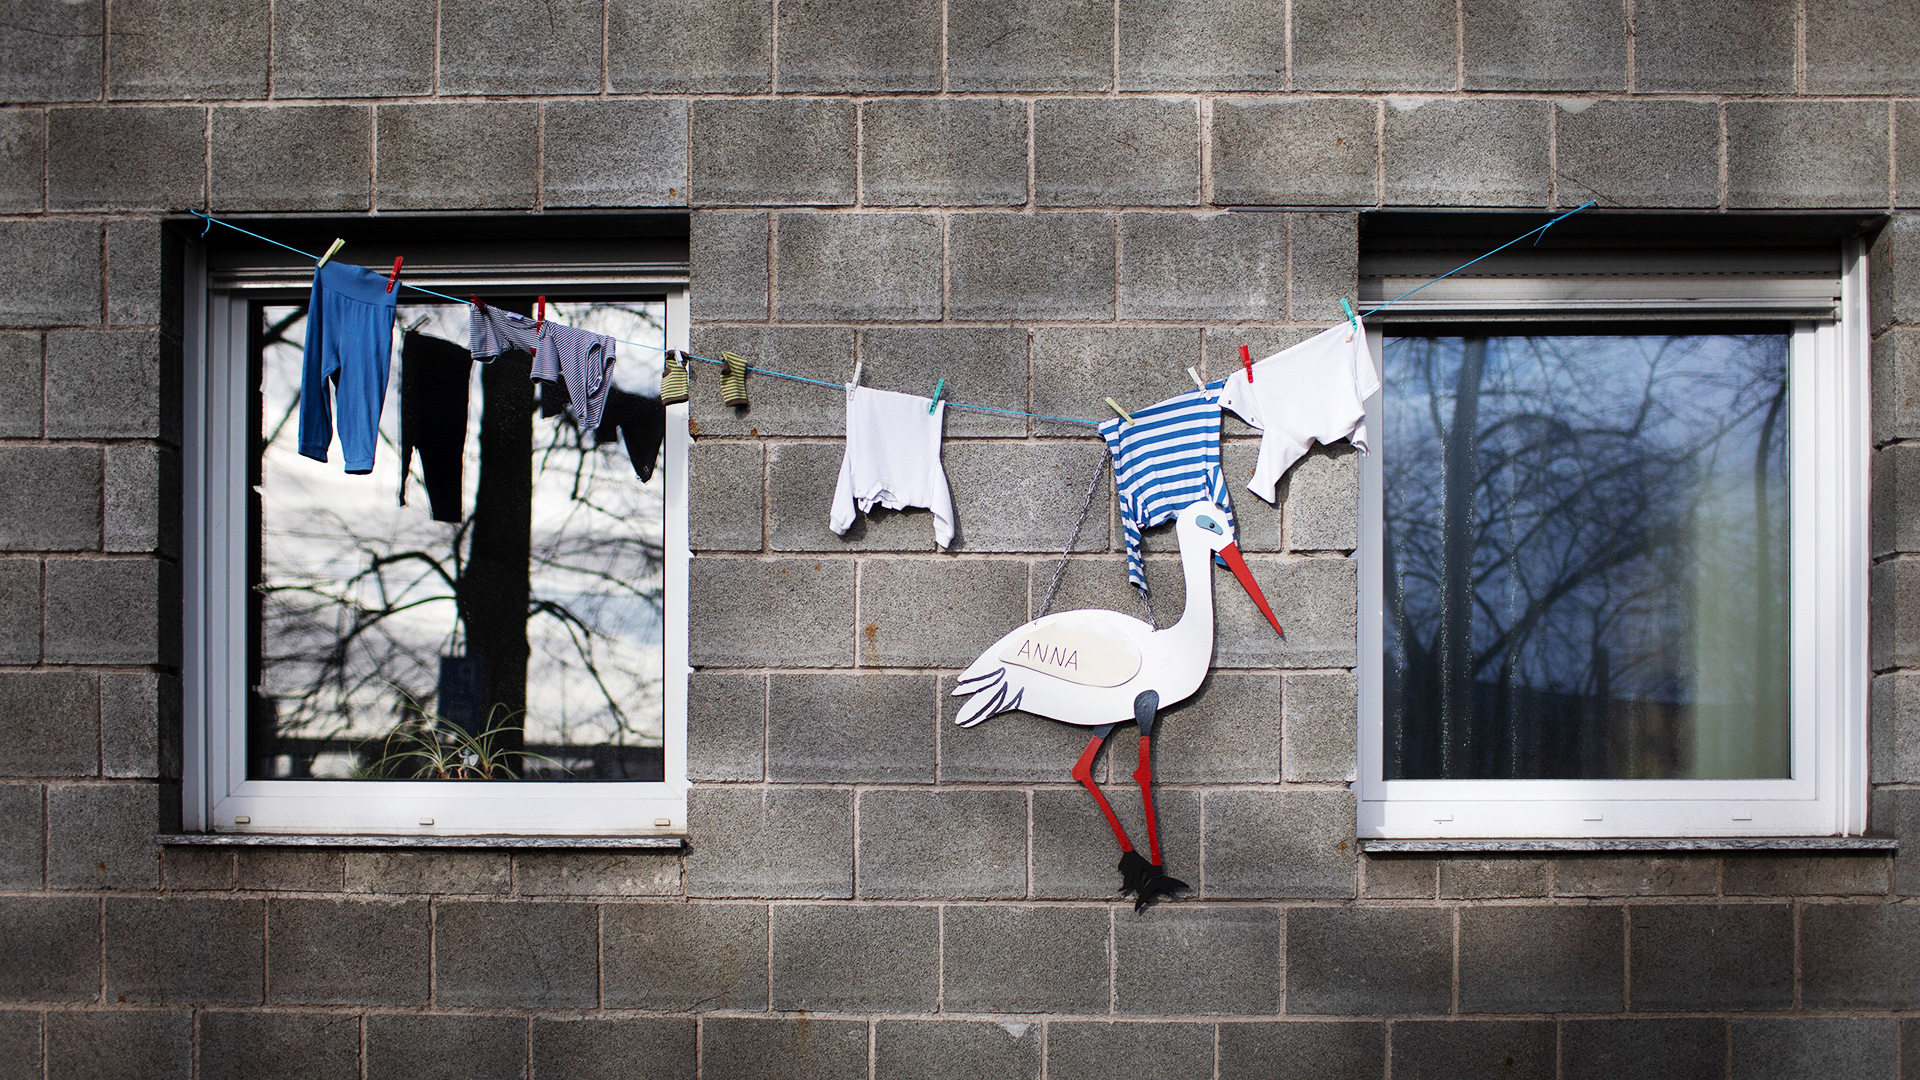 An einer Hauswand zeigt ein Klapperstorch und Kinderkleidung auf einer Leine die Geburt eines Kindes an. | picture alliance / photothek